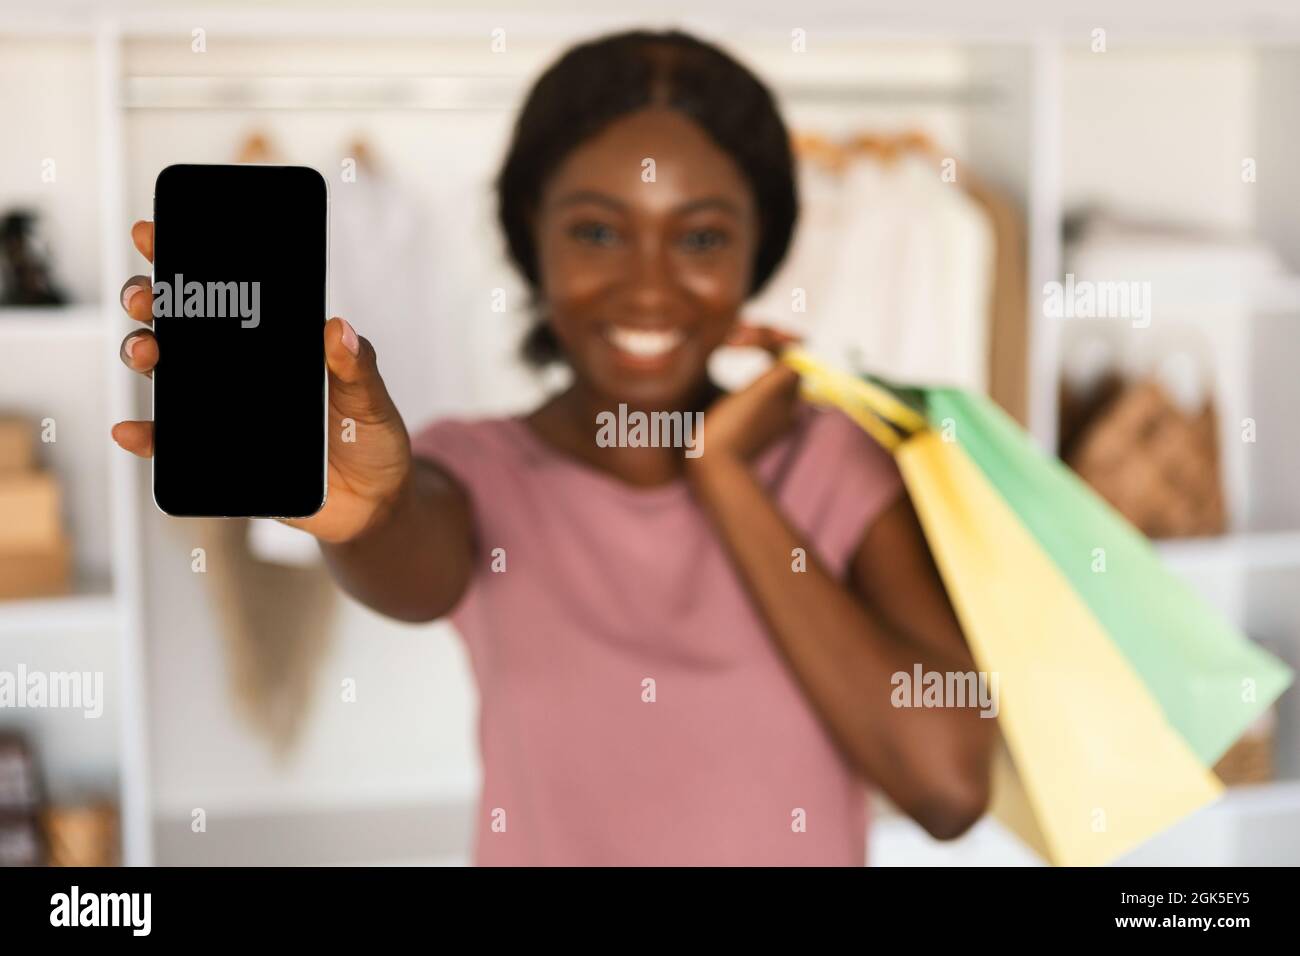 Femme noire montrant le téléphone écran vide de l'application publicitaire dans le magasin Banque D'Images